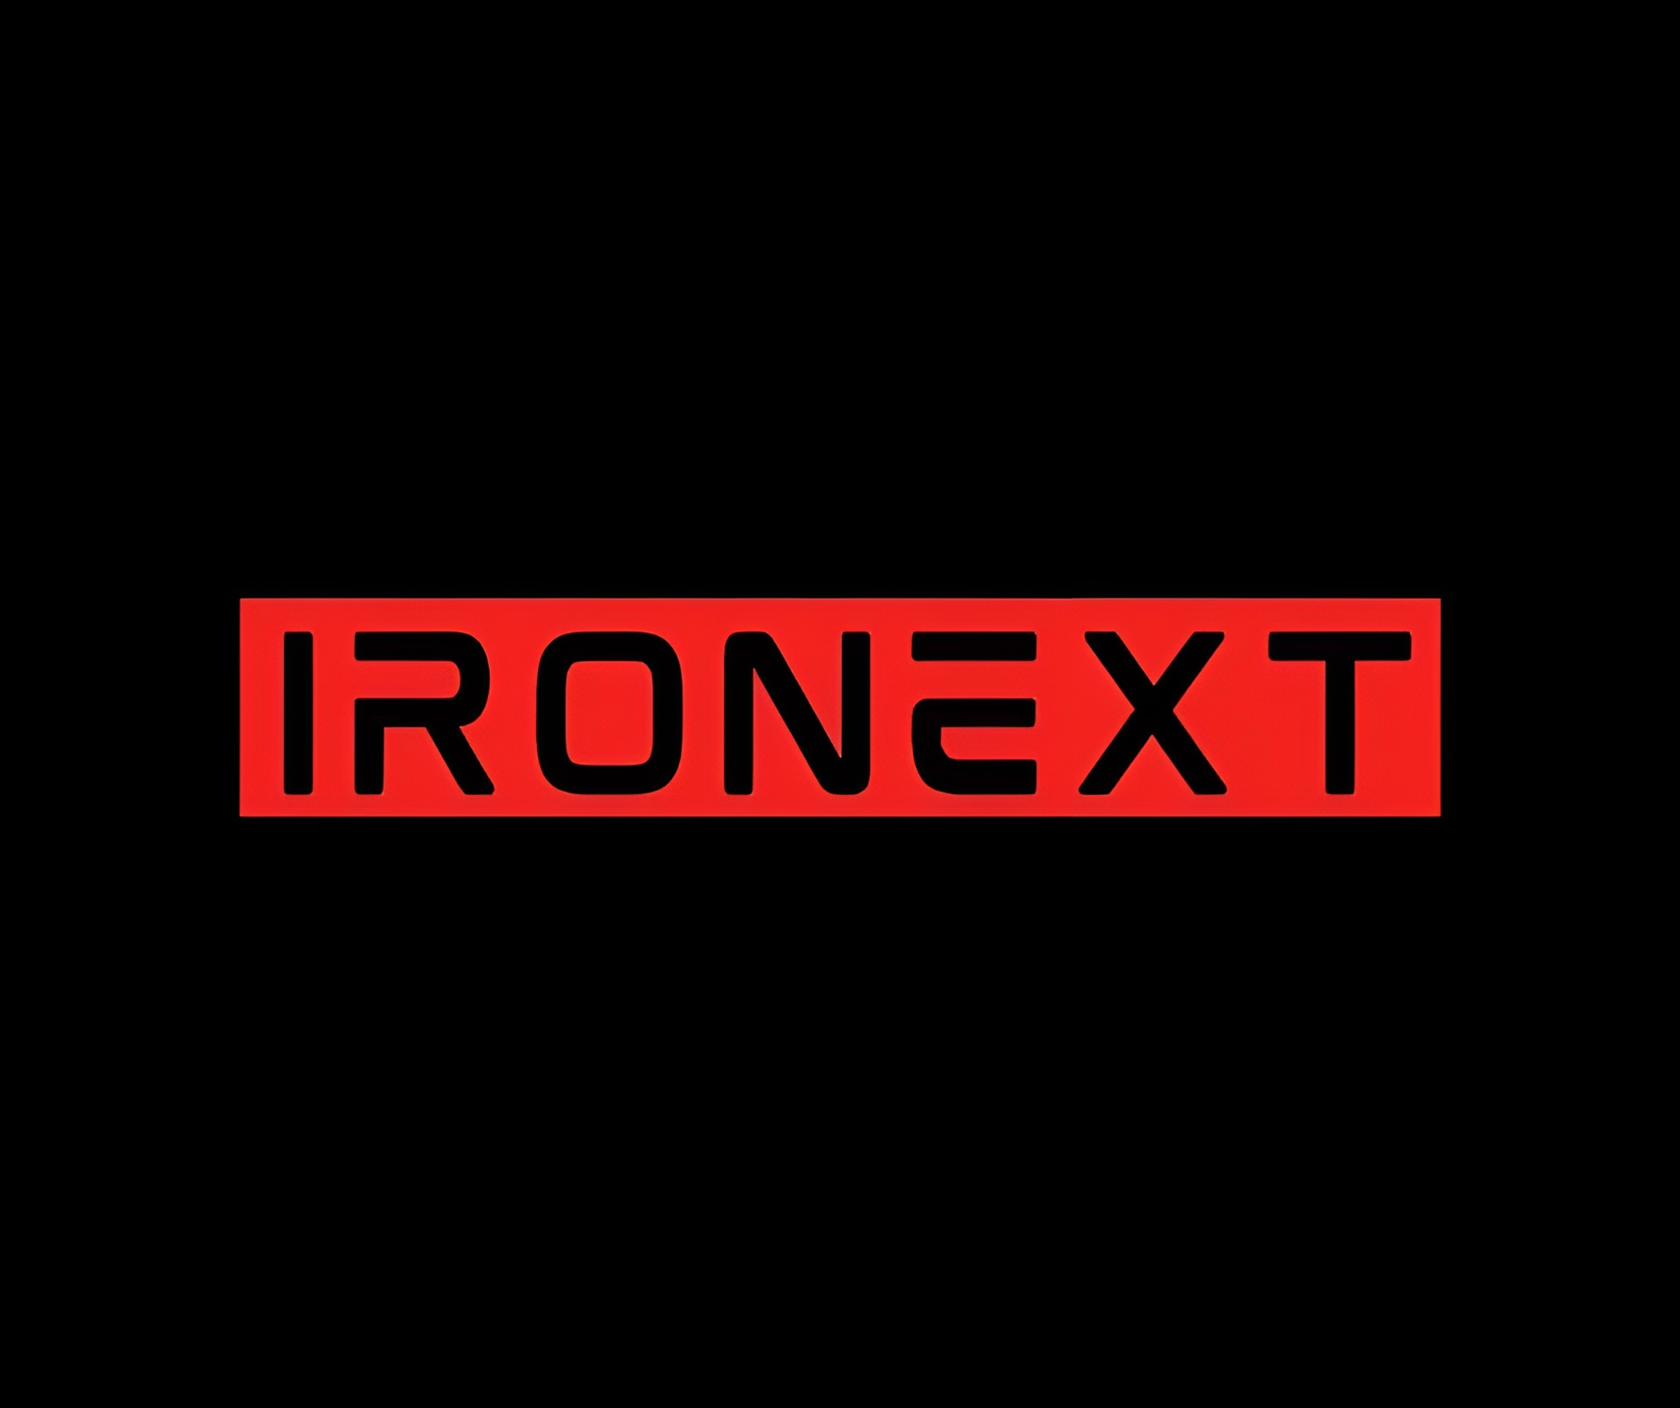  IRONEXT&nbsp;- качественные спортивные тренажеры, изготовленные в России, по доступной цене. 